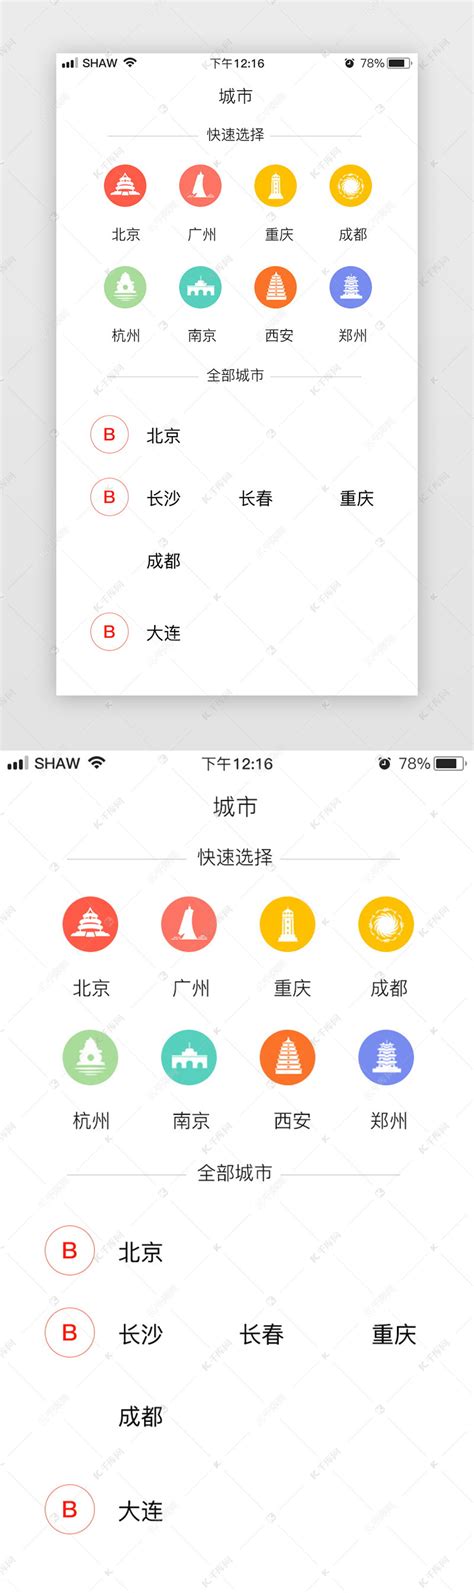 2017年6月19日 2017年8月14日 南京PPT设计